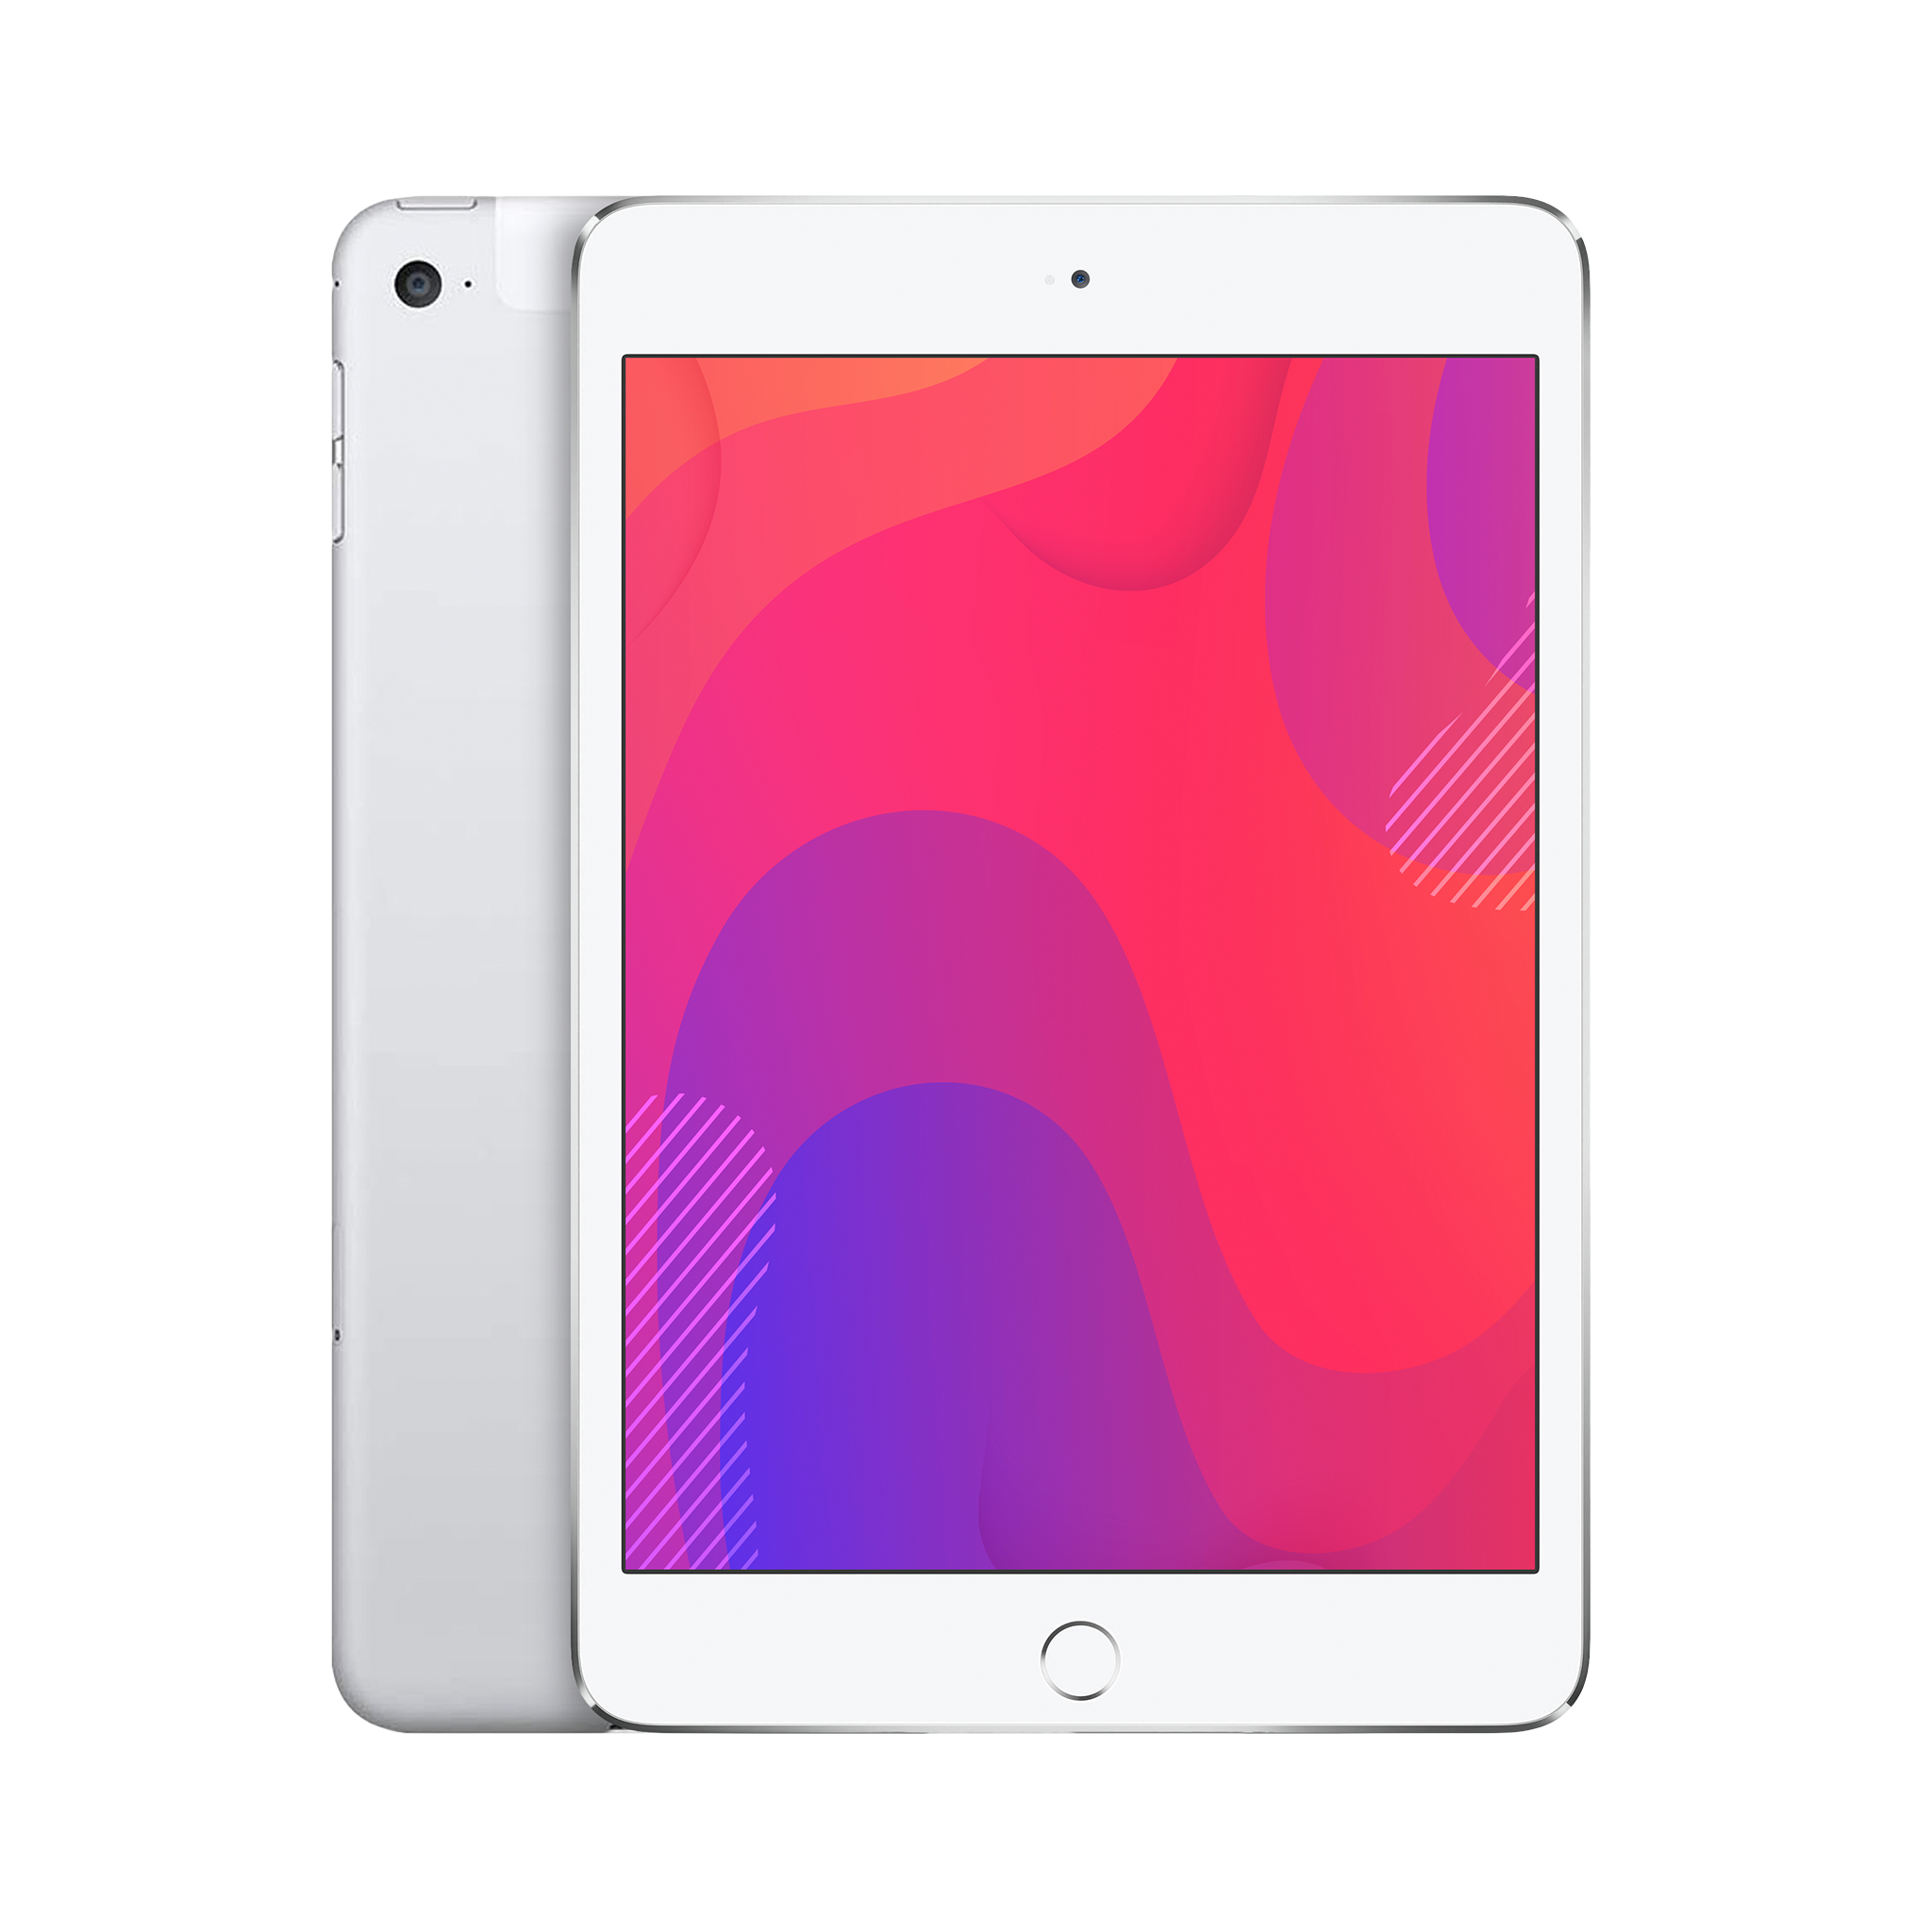  Apple iPad Mini 4, 128GB, Silver - WiFi (Renewed